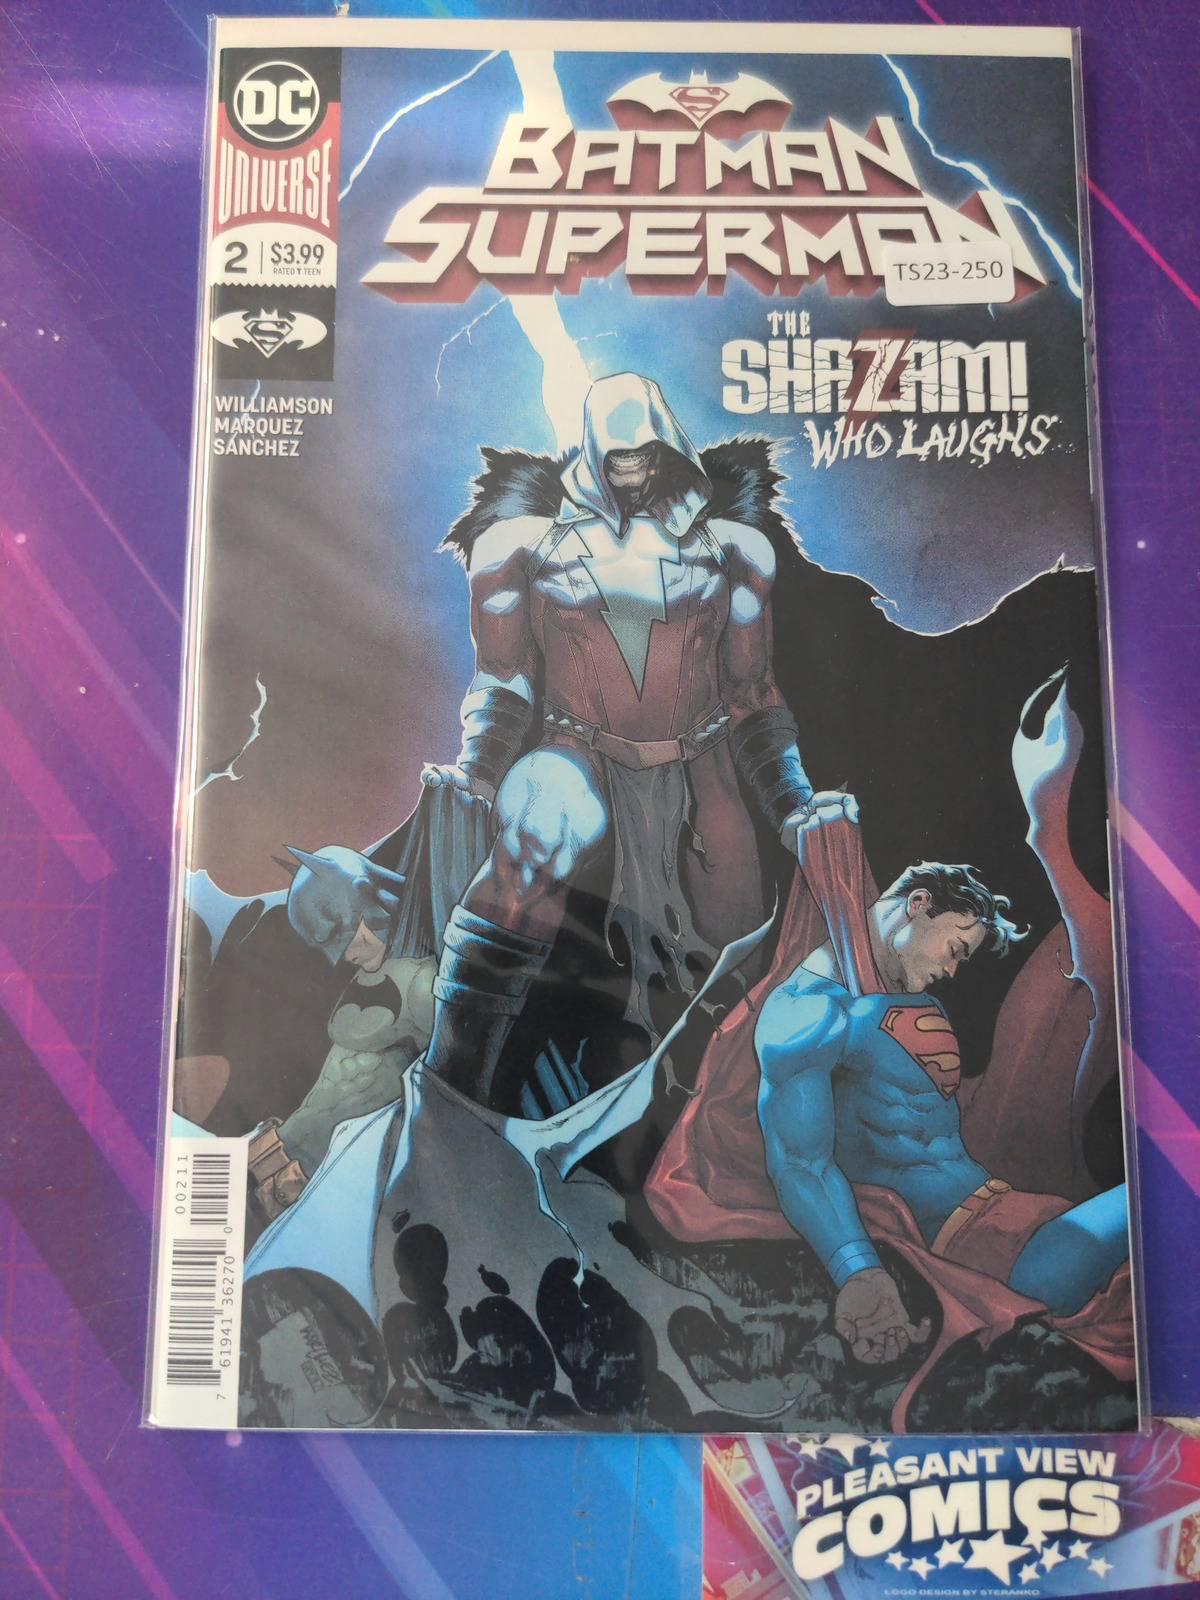 BATMAN/SUPERMAN #2 VOL. 2 HIGH GRADE DC COMIC BOOK TS23-250